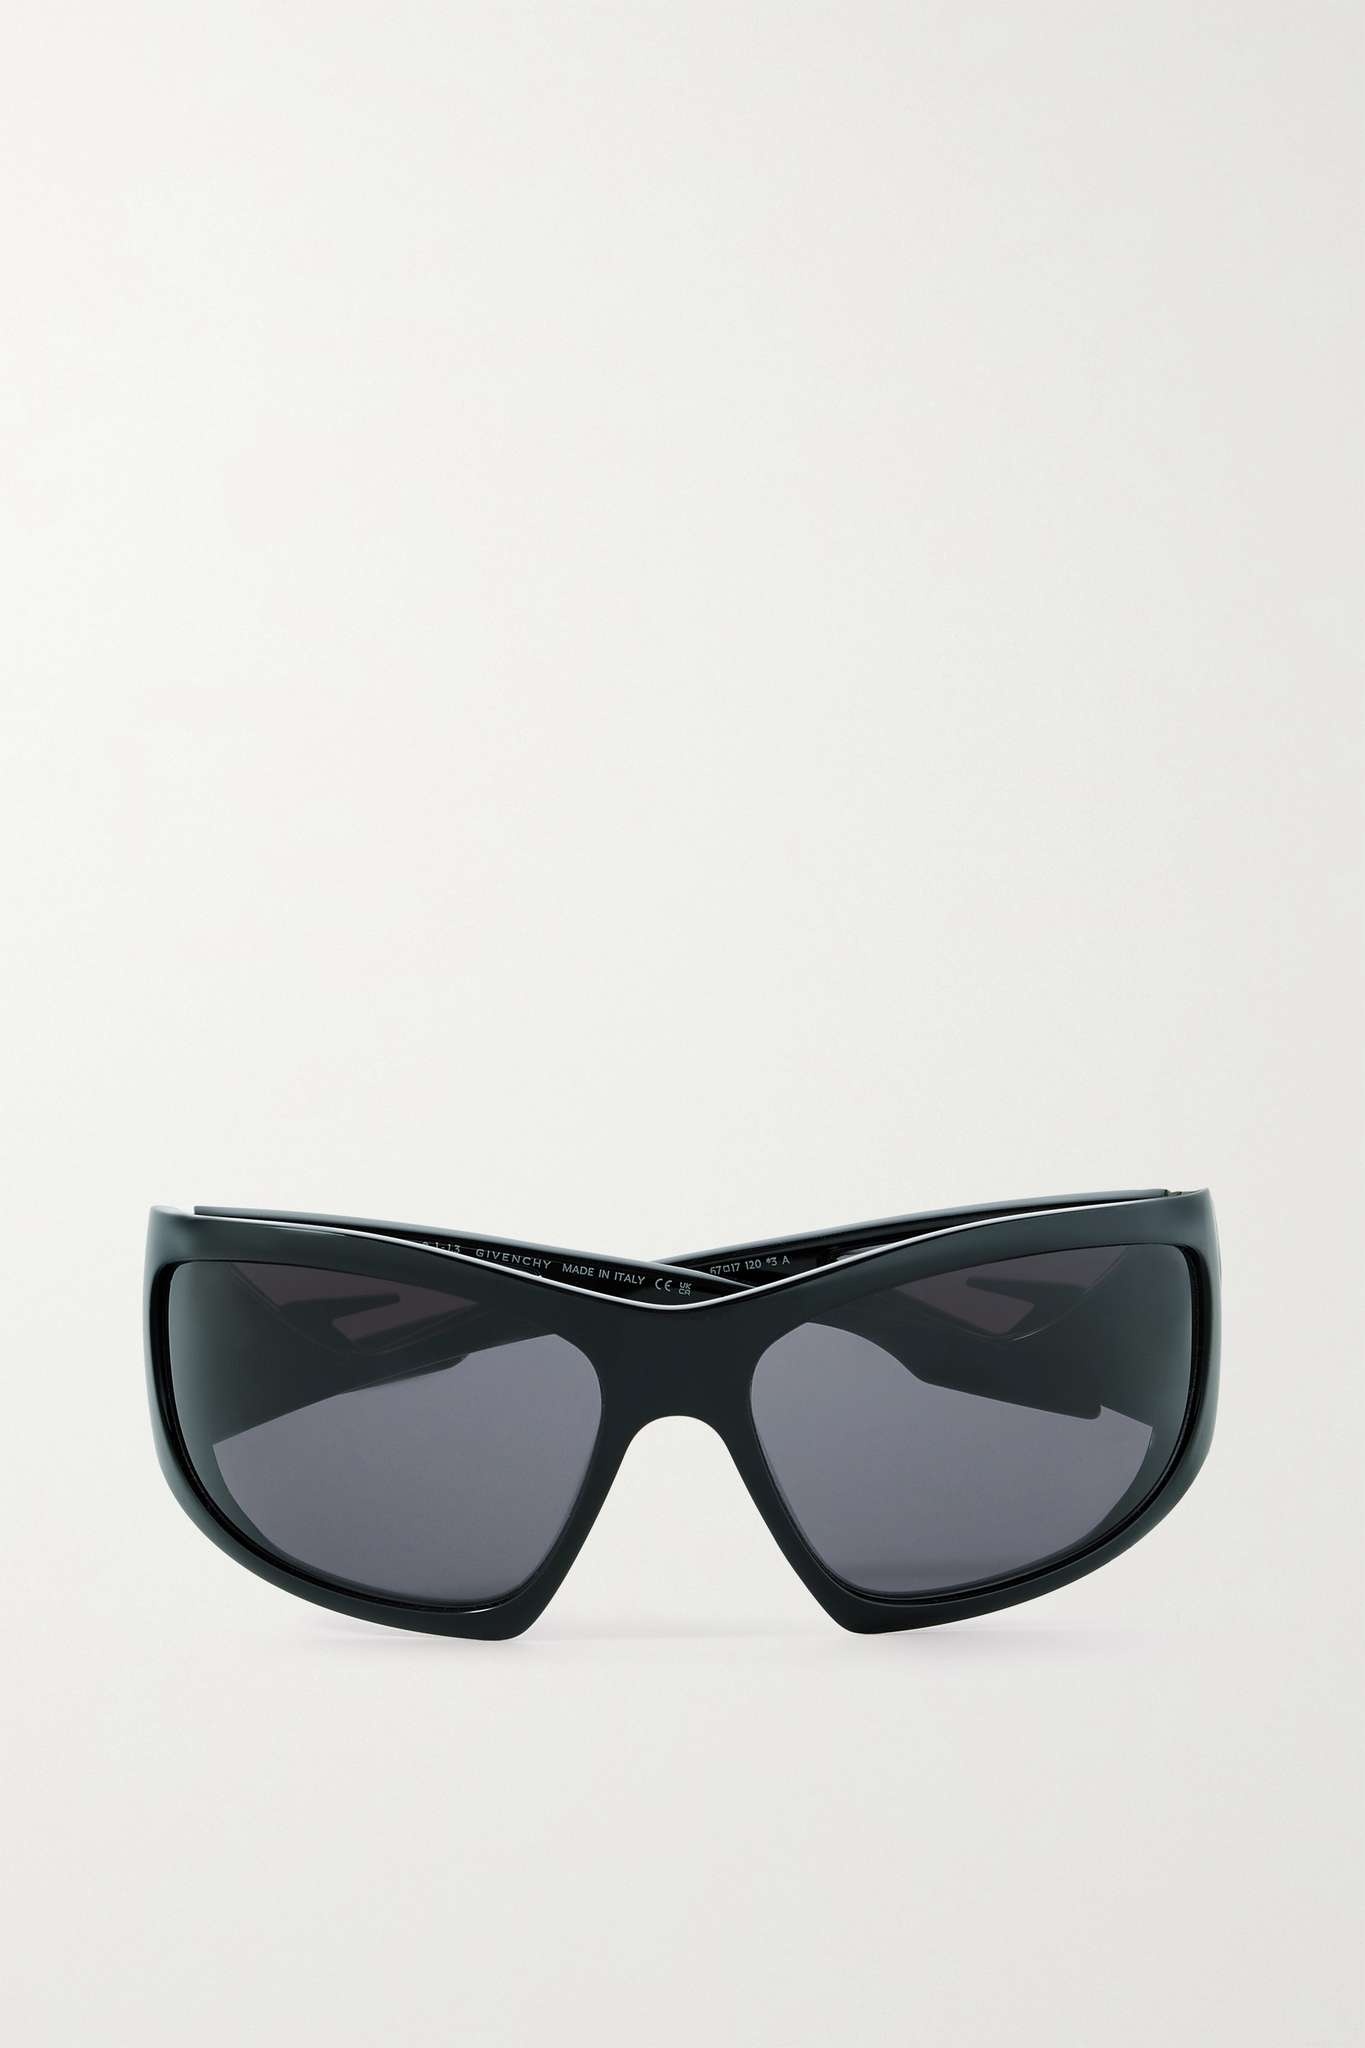 Giv Cut oversized D-frame nylon sunglasses - 1